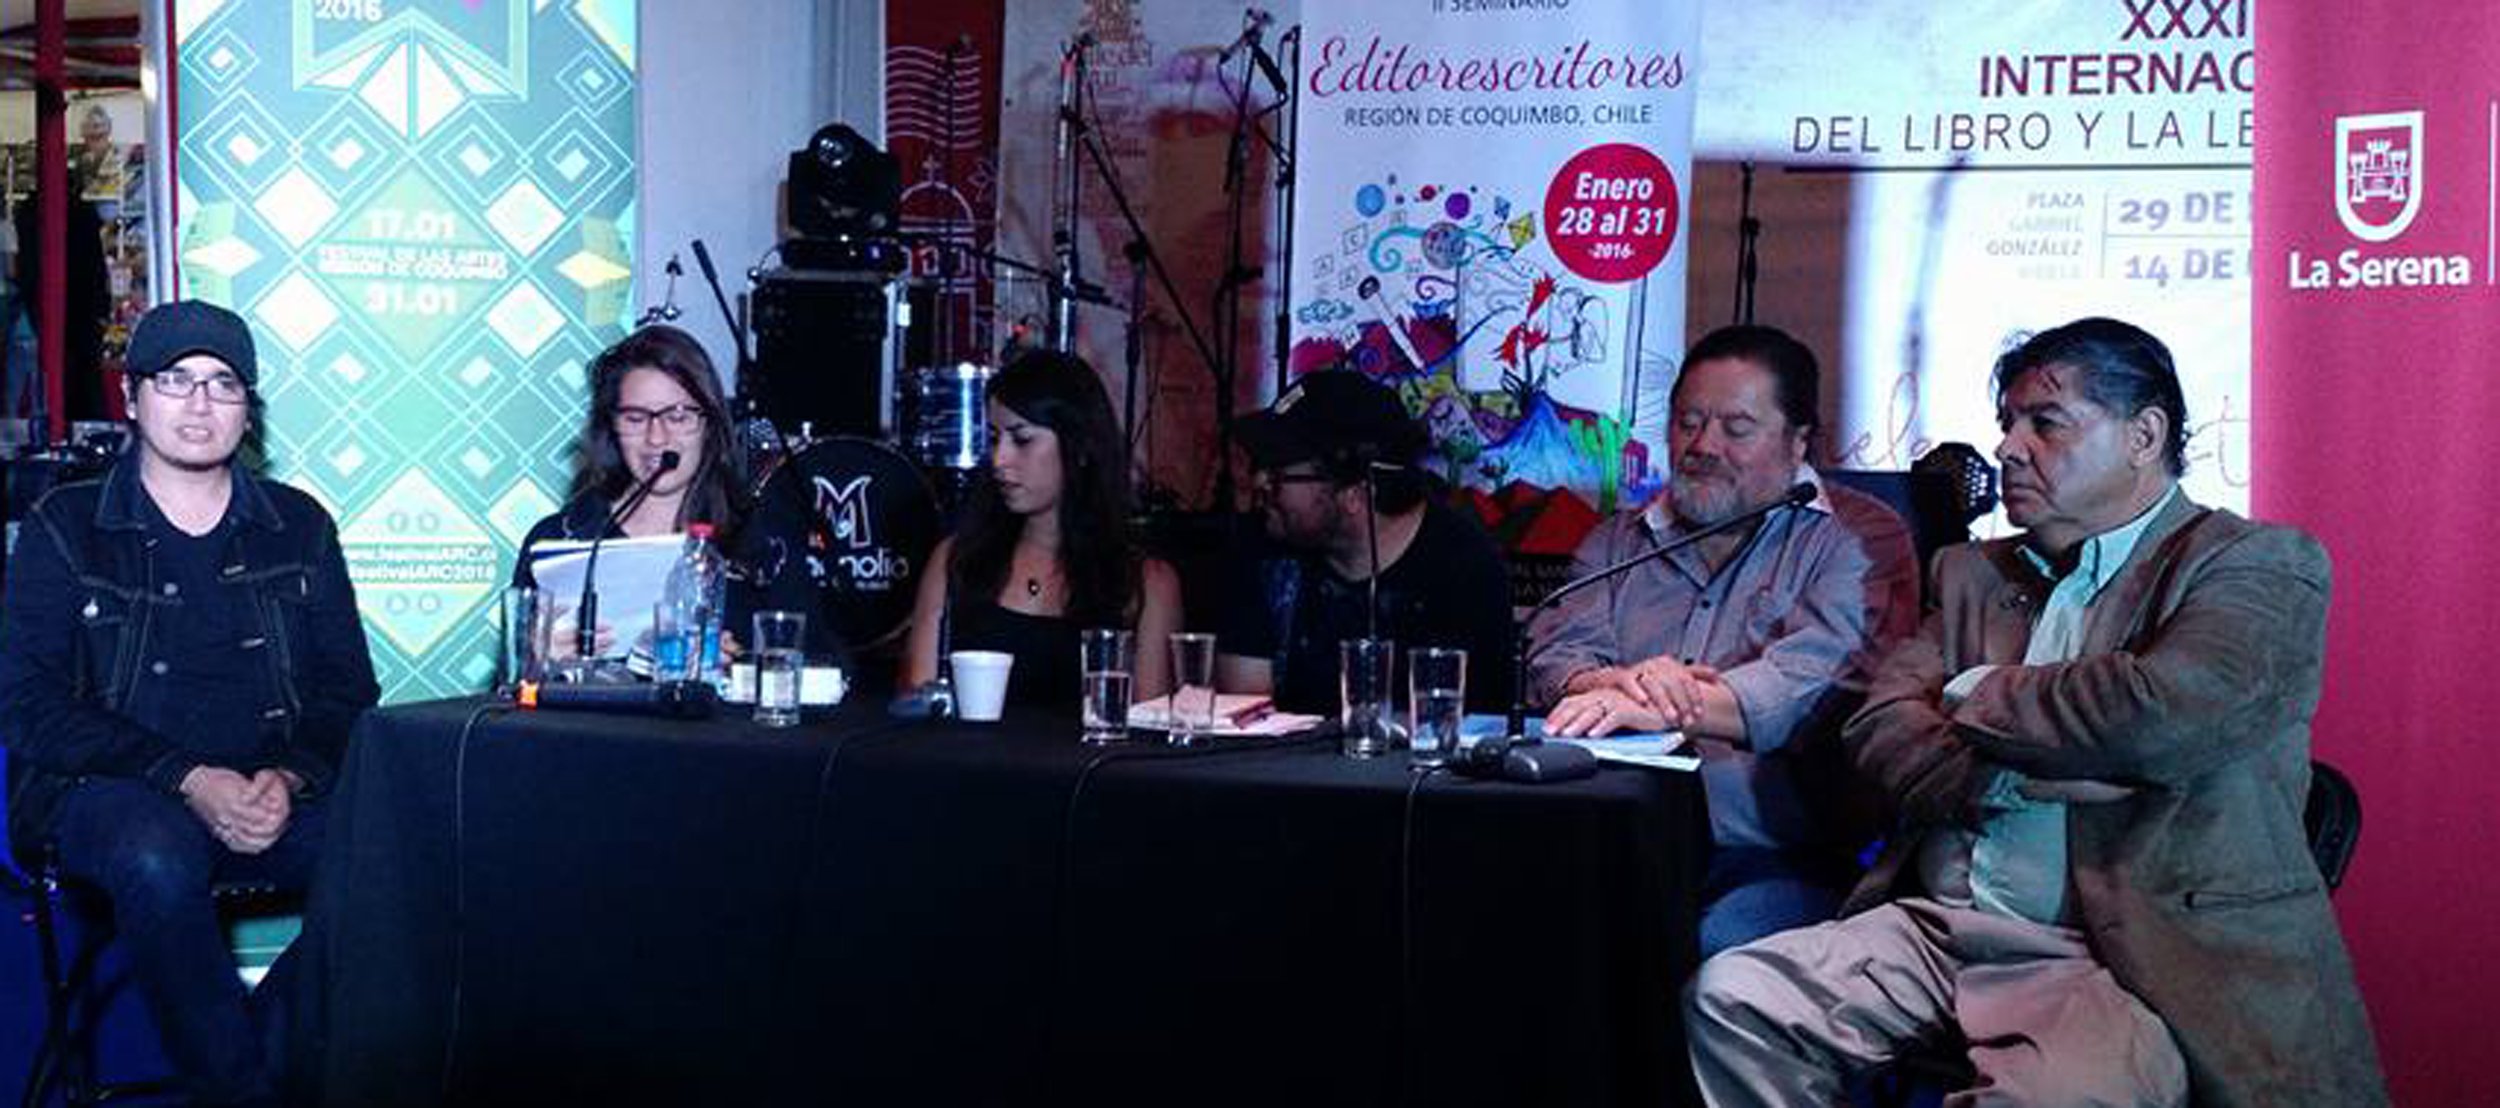 Reflexión ante el oficialismo editorial chileno y la riqueza literaria de Coquimbo